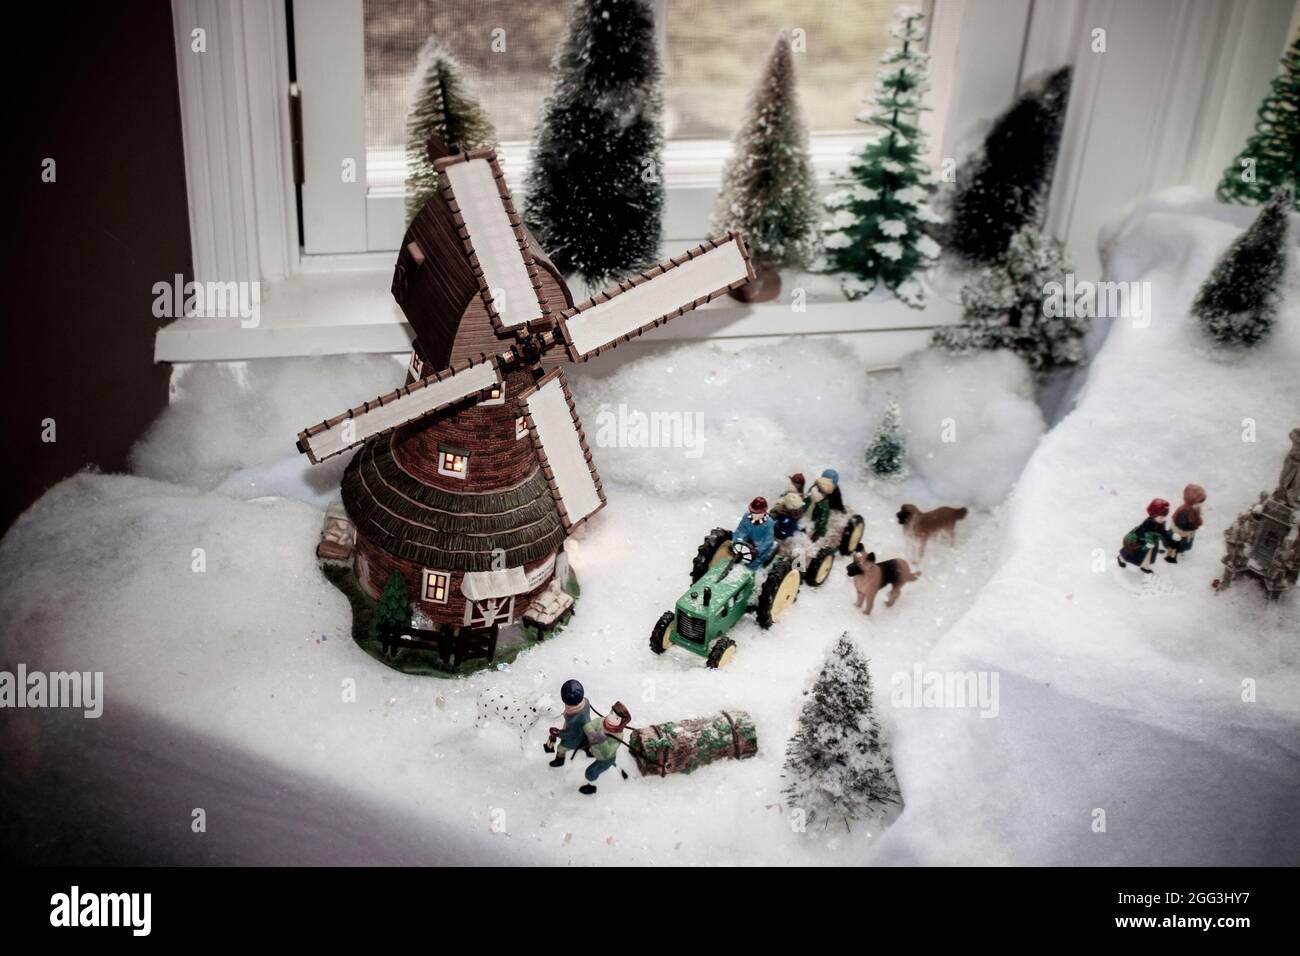 Décor vintage de moulin à vent dans la fenêtre de Noël Village scène avec tracteur et hayride et les enfants tirant Yule log et les chiens courir dans la neige - dans la victoire Banque D'Images